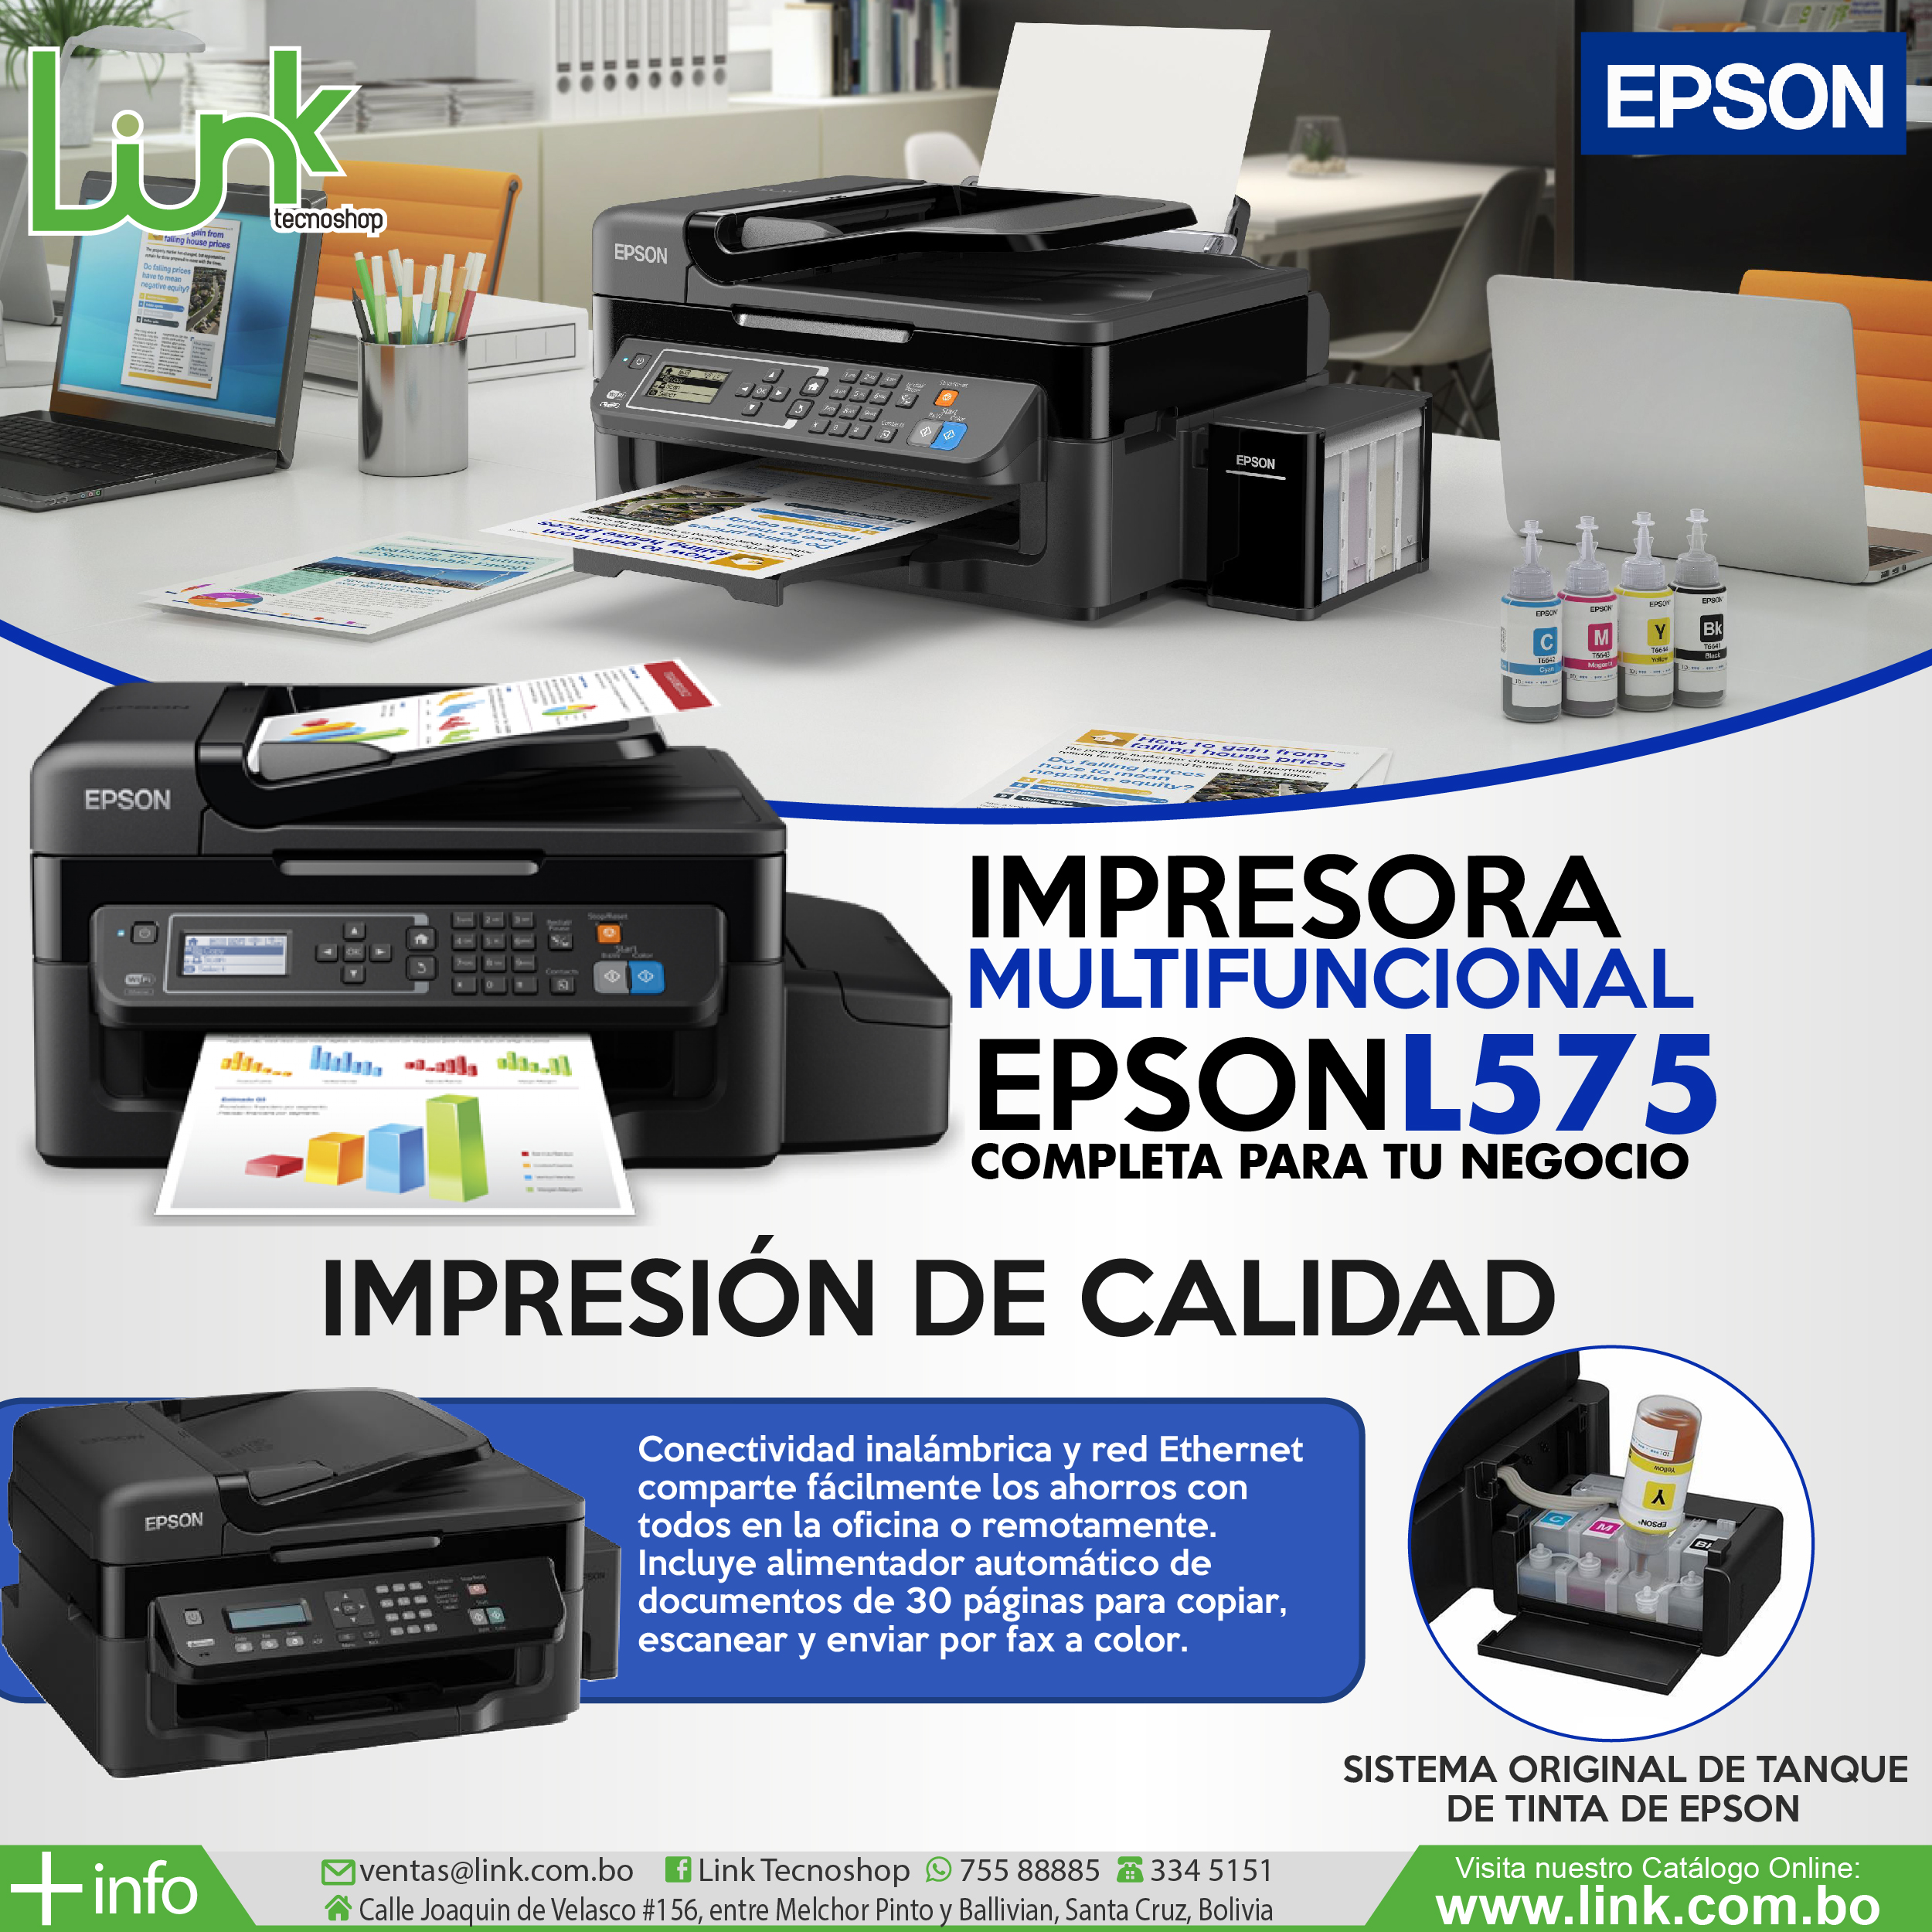 combustible recibo apilar Link Tecnoshop - Impresora Multifuncional Epson L575 con el sistema  continuo original de fÃ¡brica!